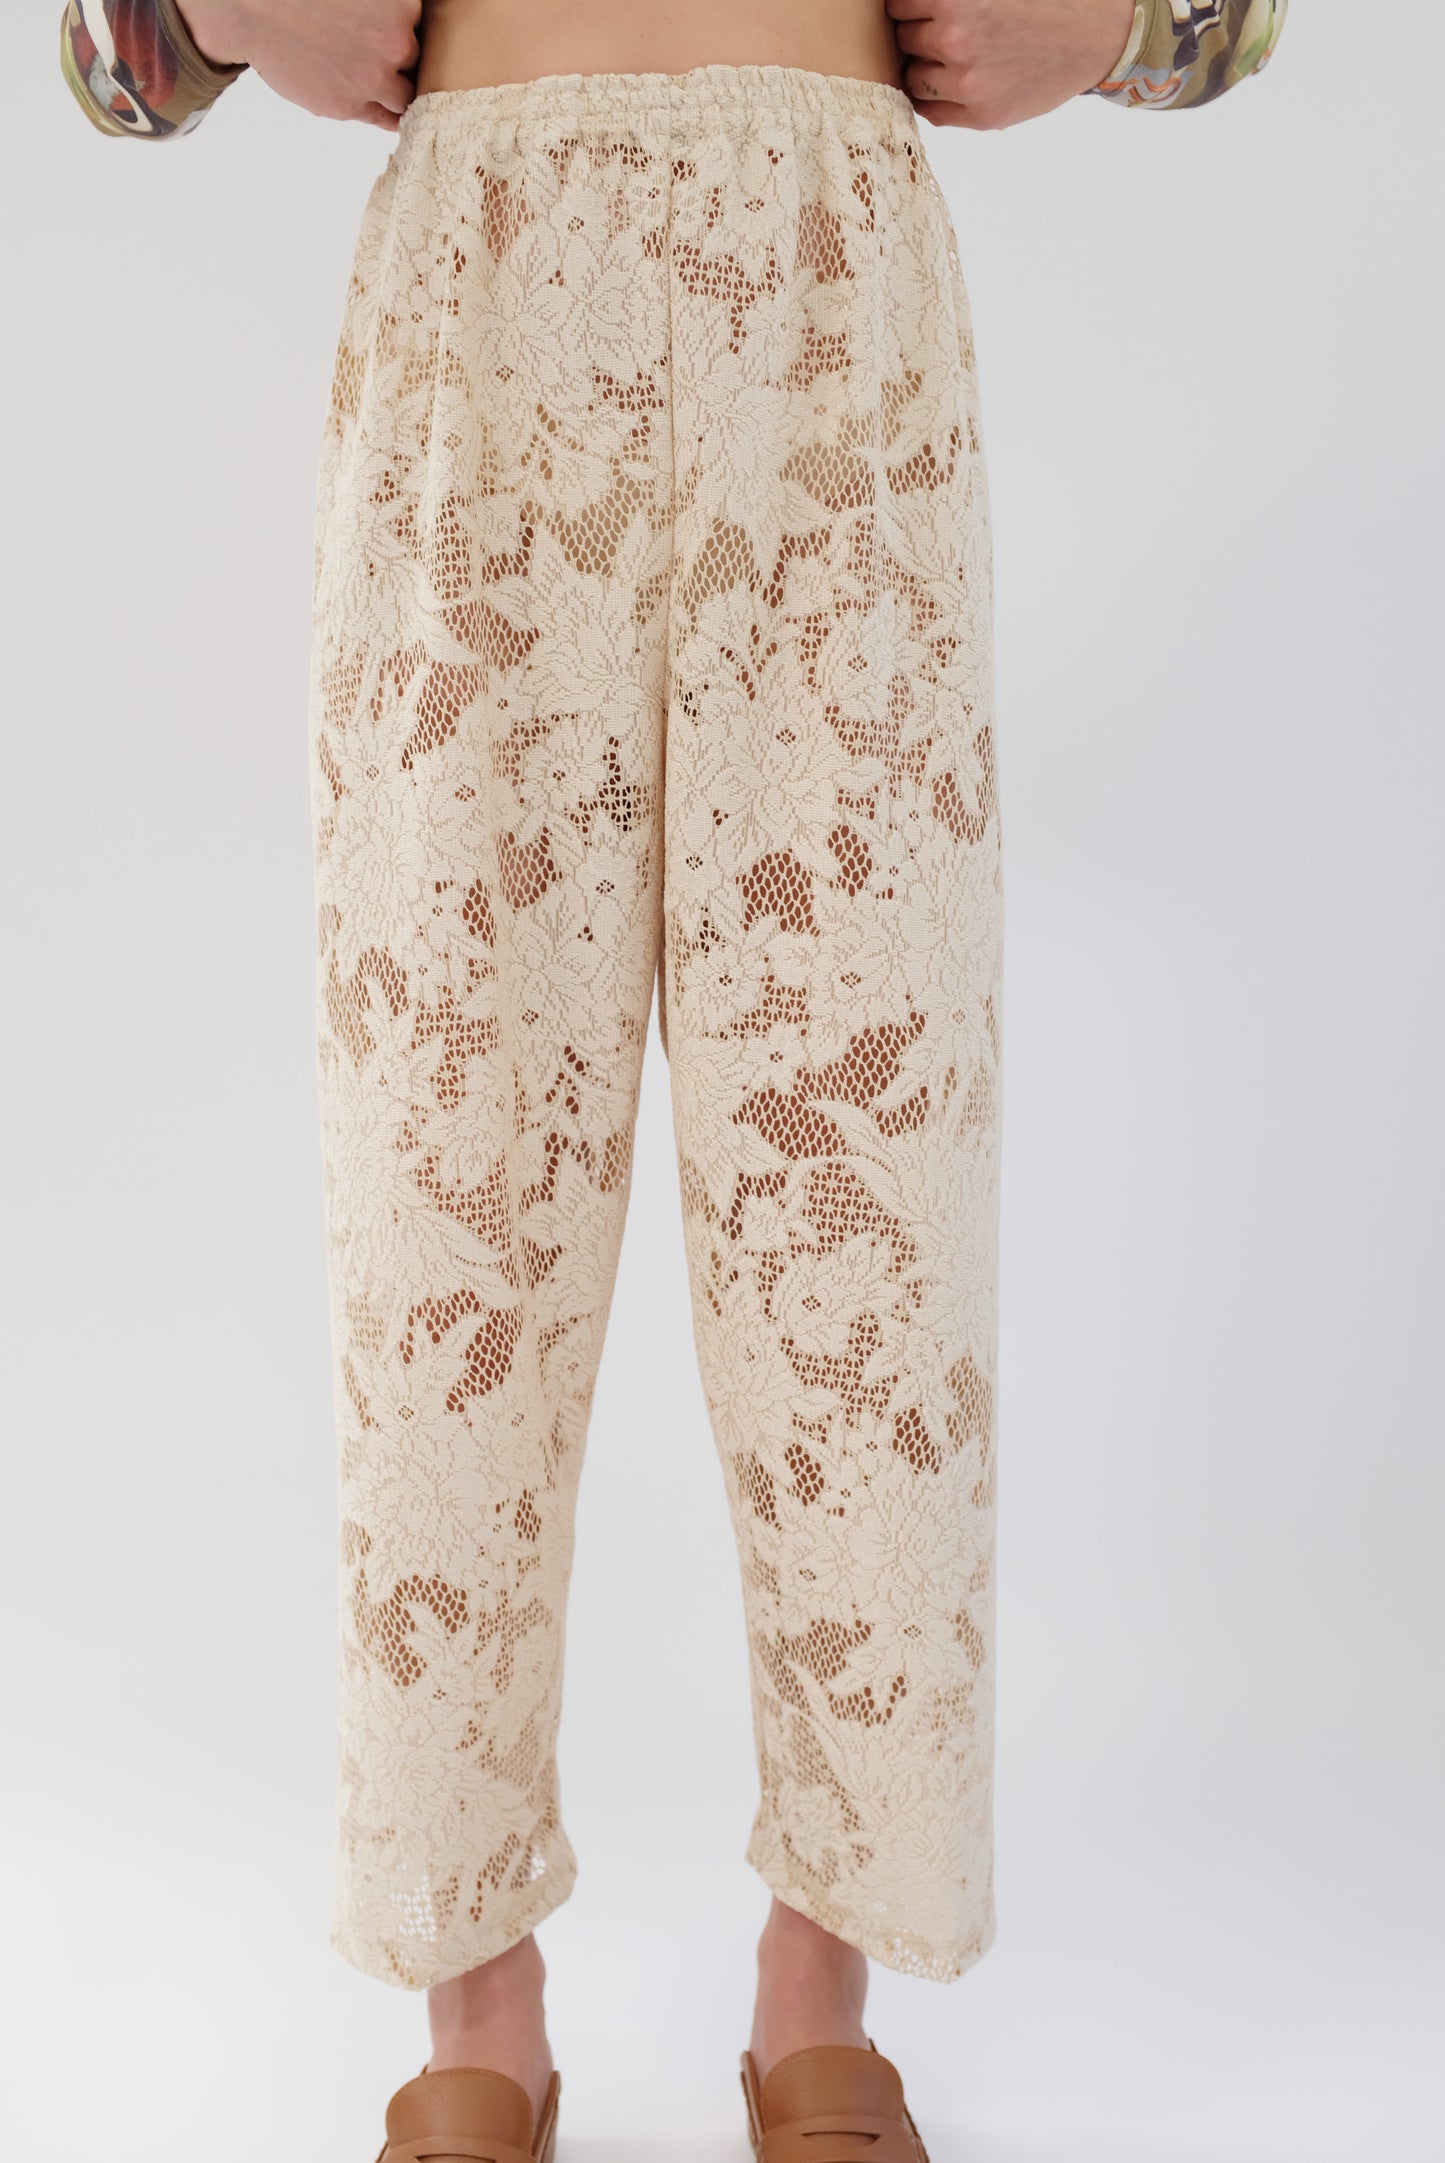 Beklina Lace Basic Pant Ivory